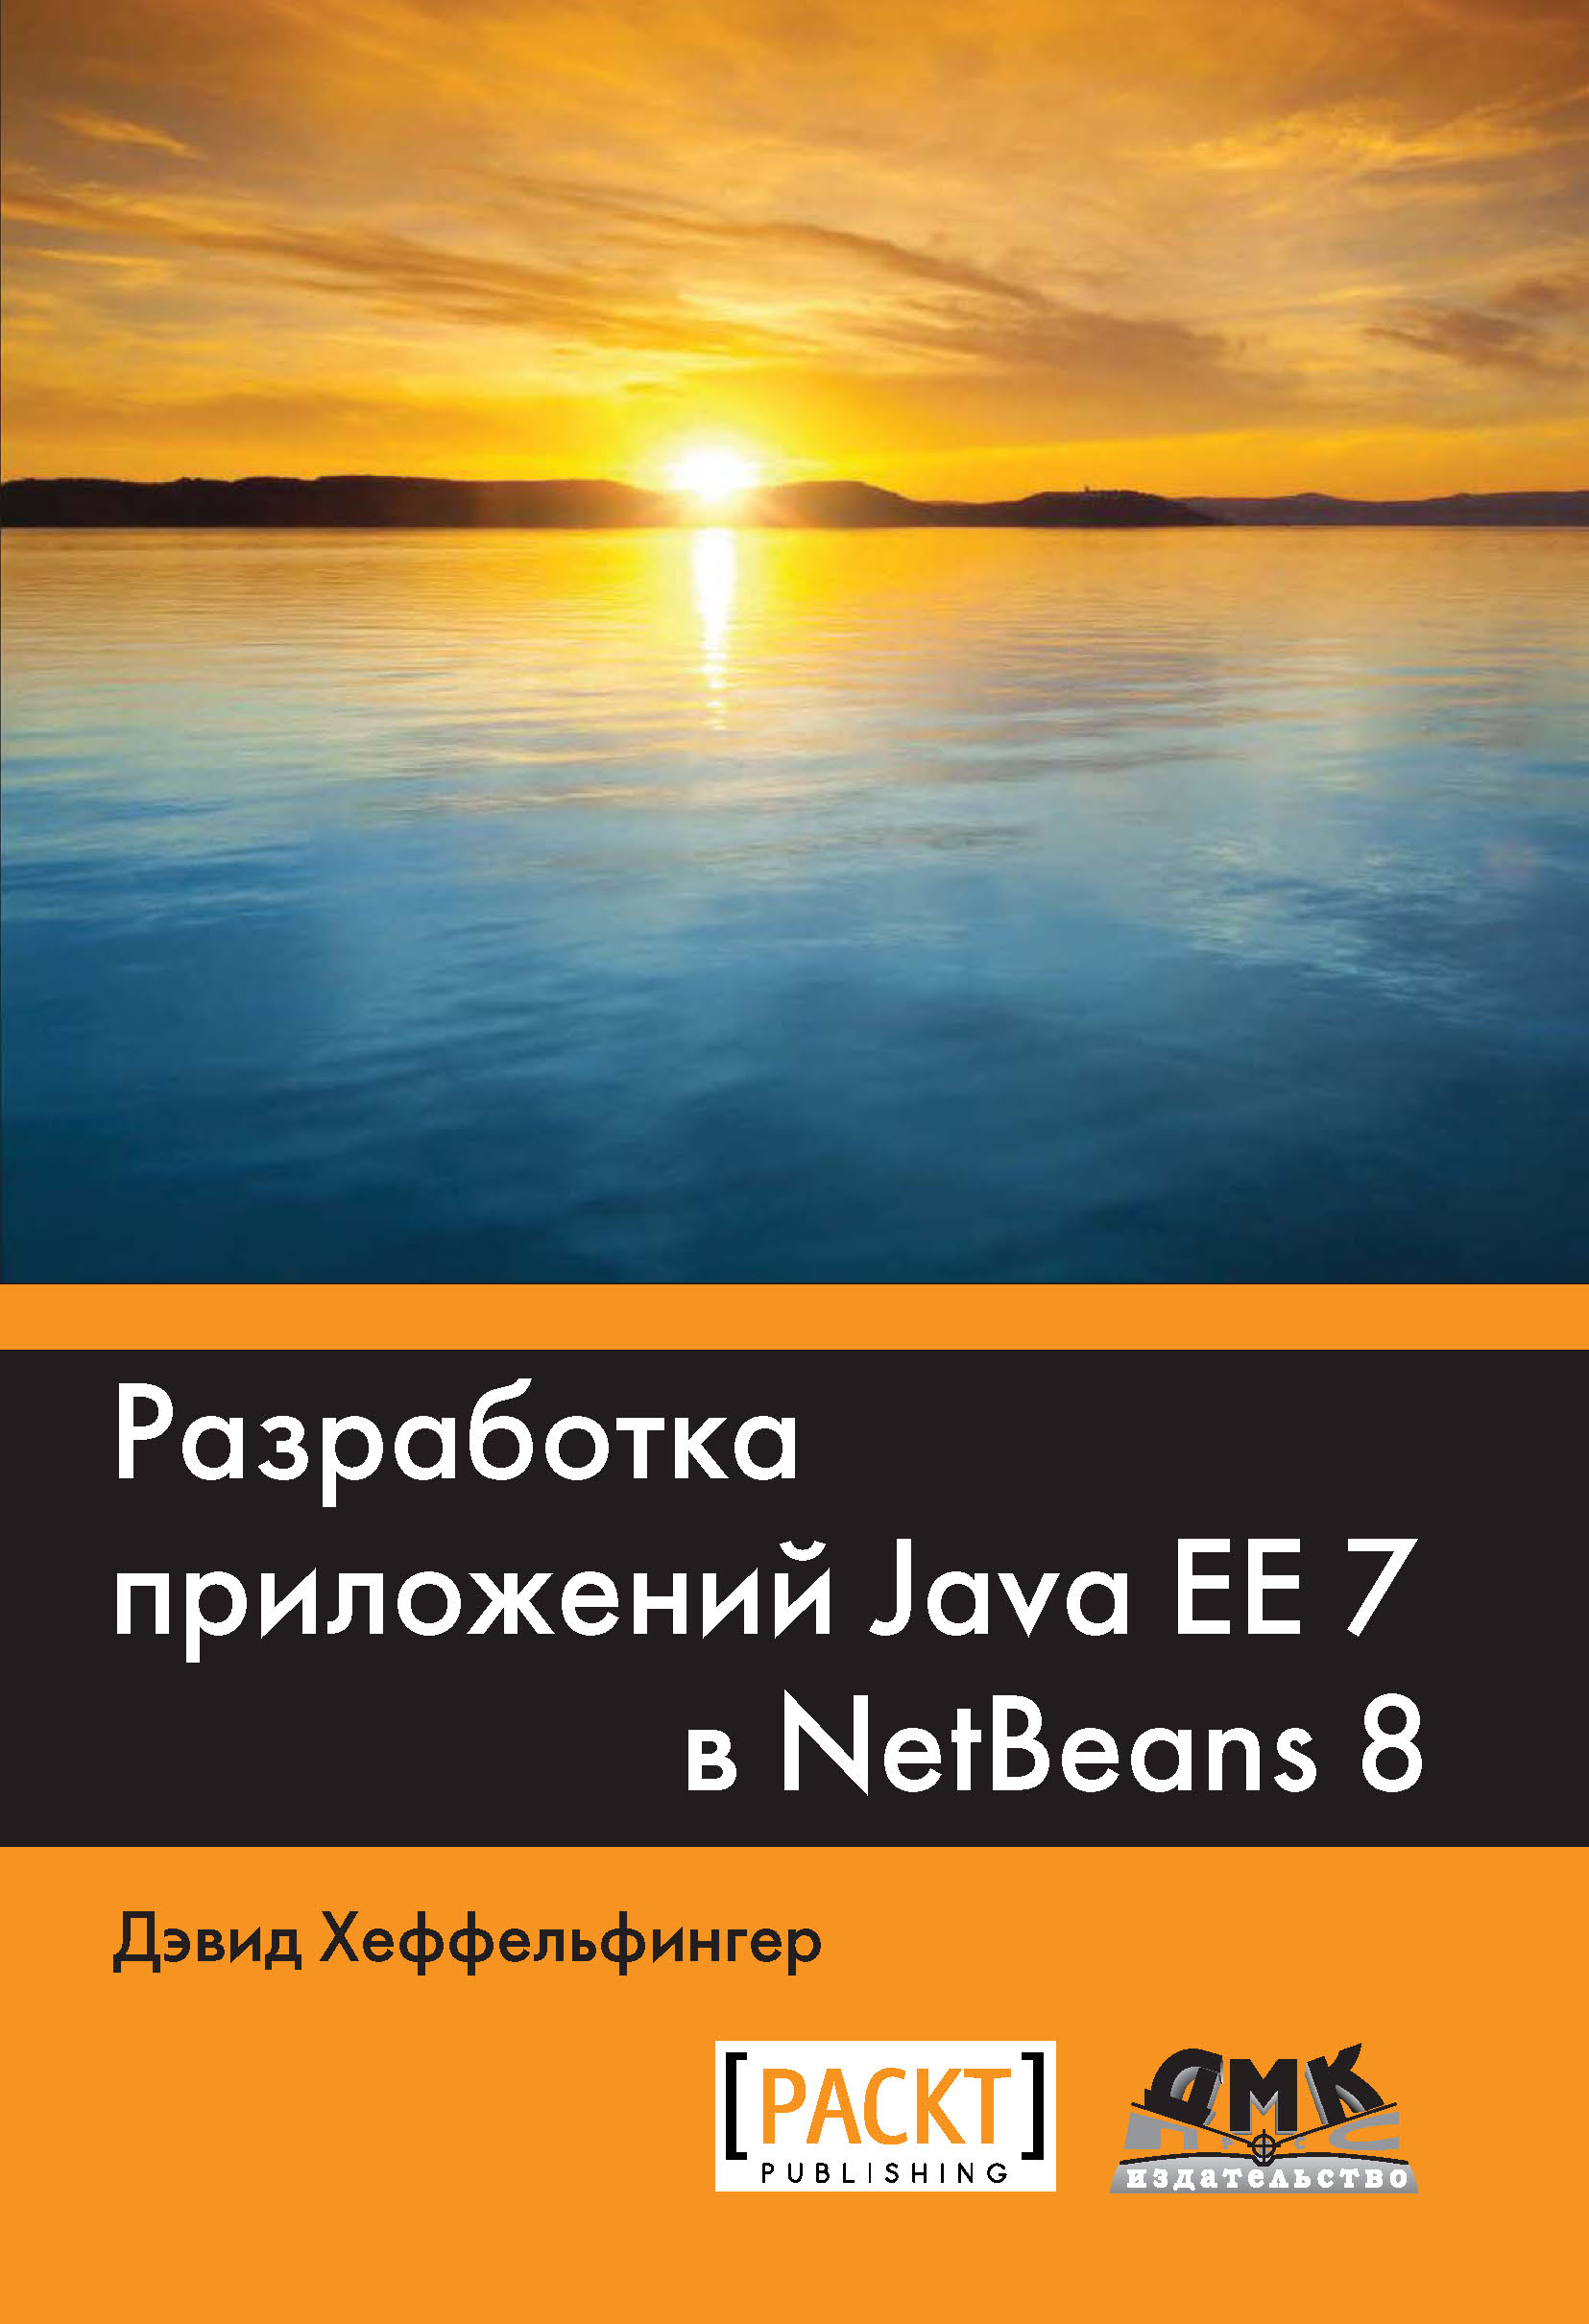 Книга  Разработка приложений Java EE 7 в NetBeans 8 созданная Дэвид Хеффельфингер, Александр Киселев может относится к жанру зарубежная компьютерная литература, зарубежная справочная литература, программирование, руководства. Стоимость электронной книги Разработка приложений Java EE 7 в NetBeans 8 с идентификатором 22966786 составляет 559.00 руб.